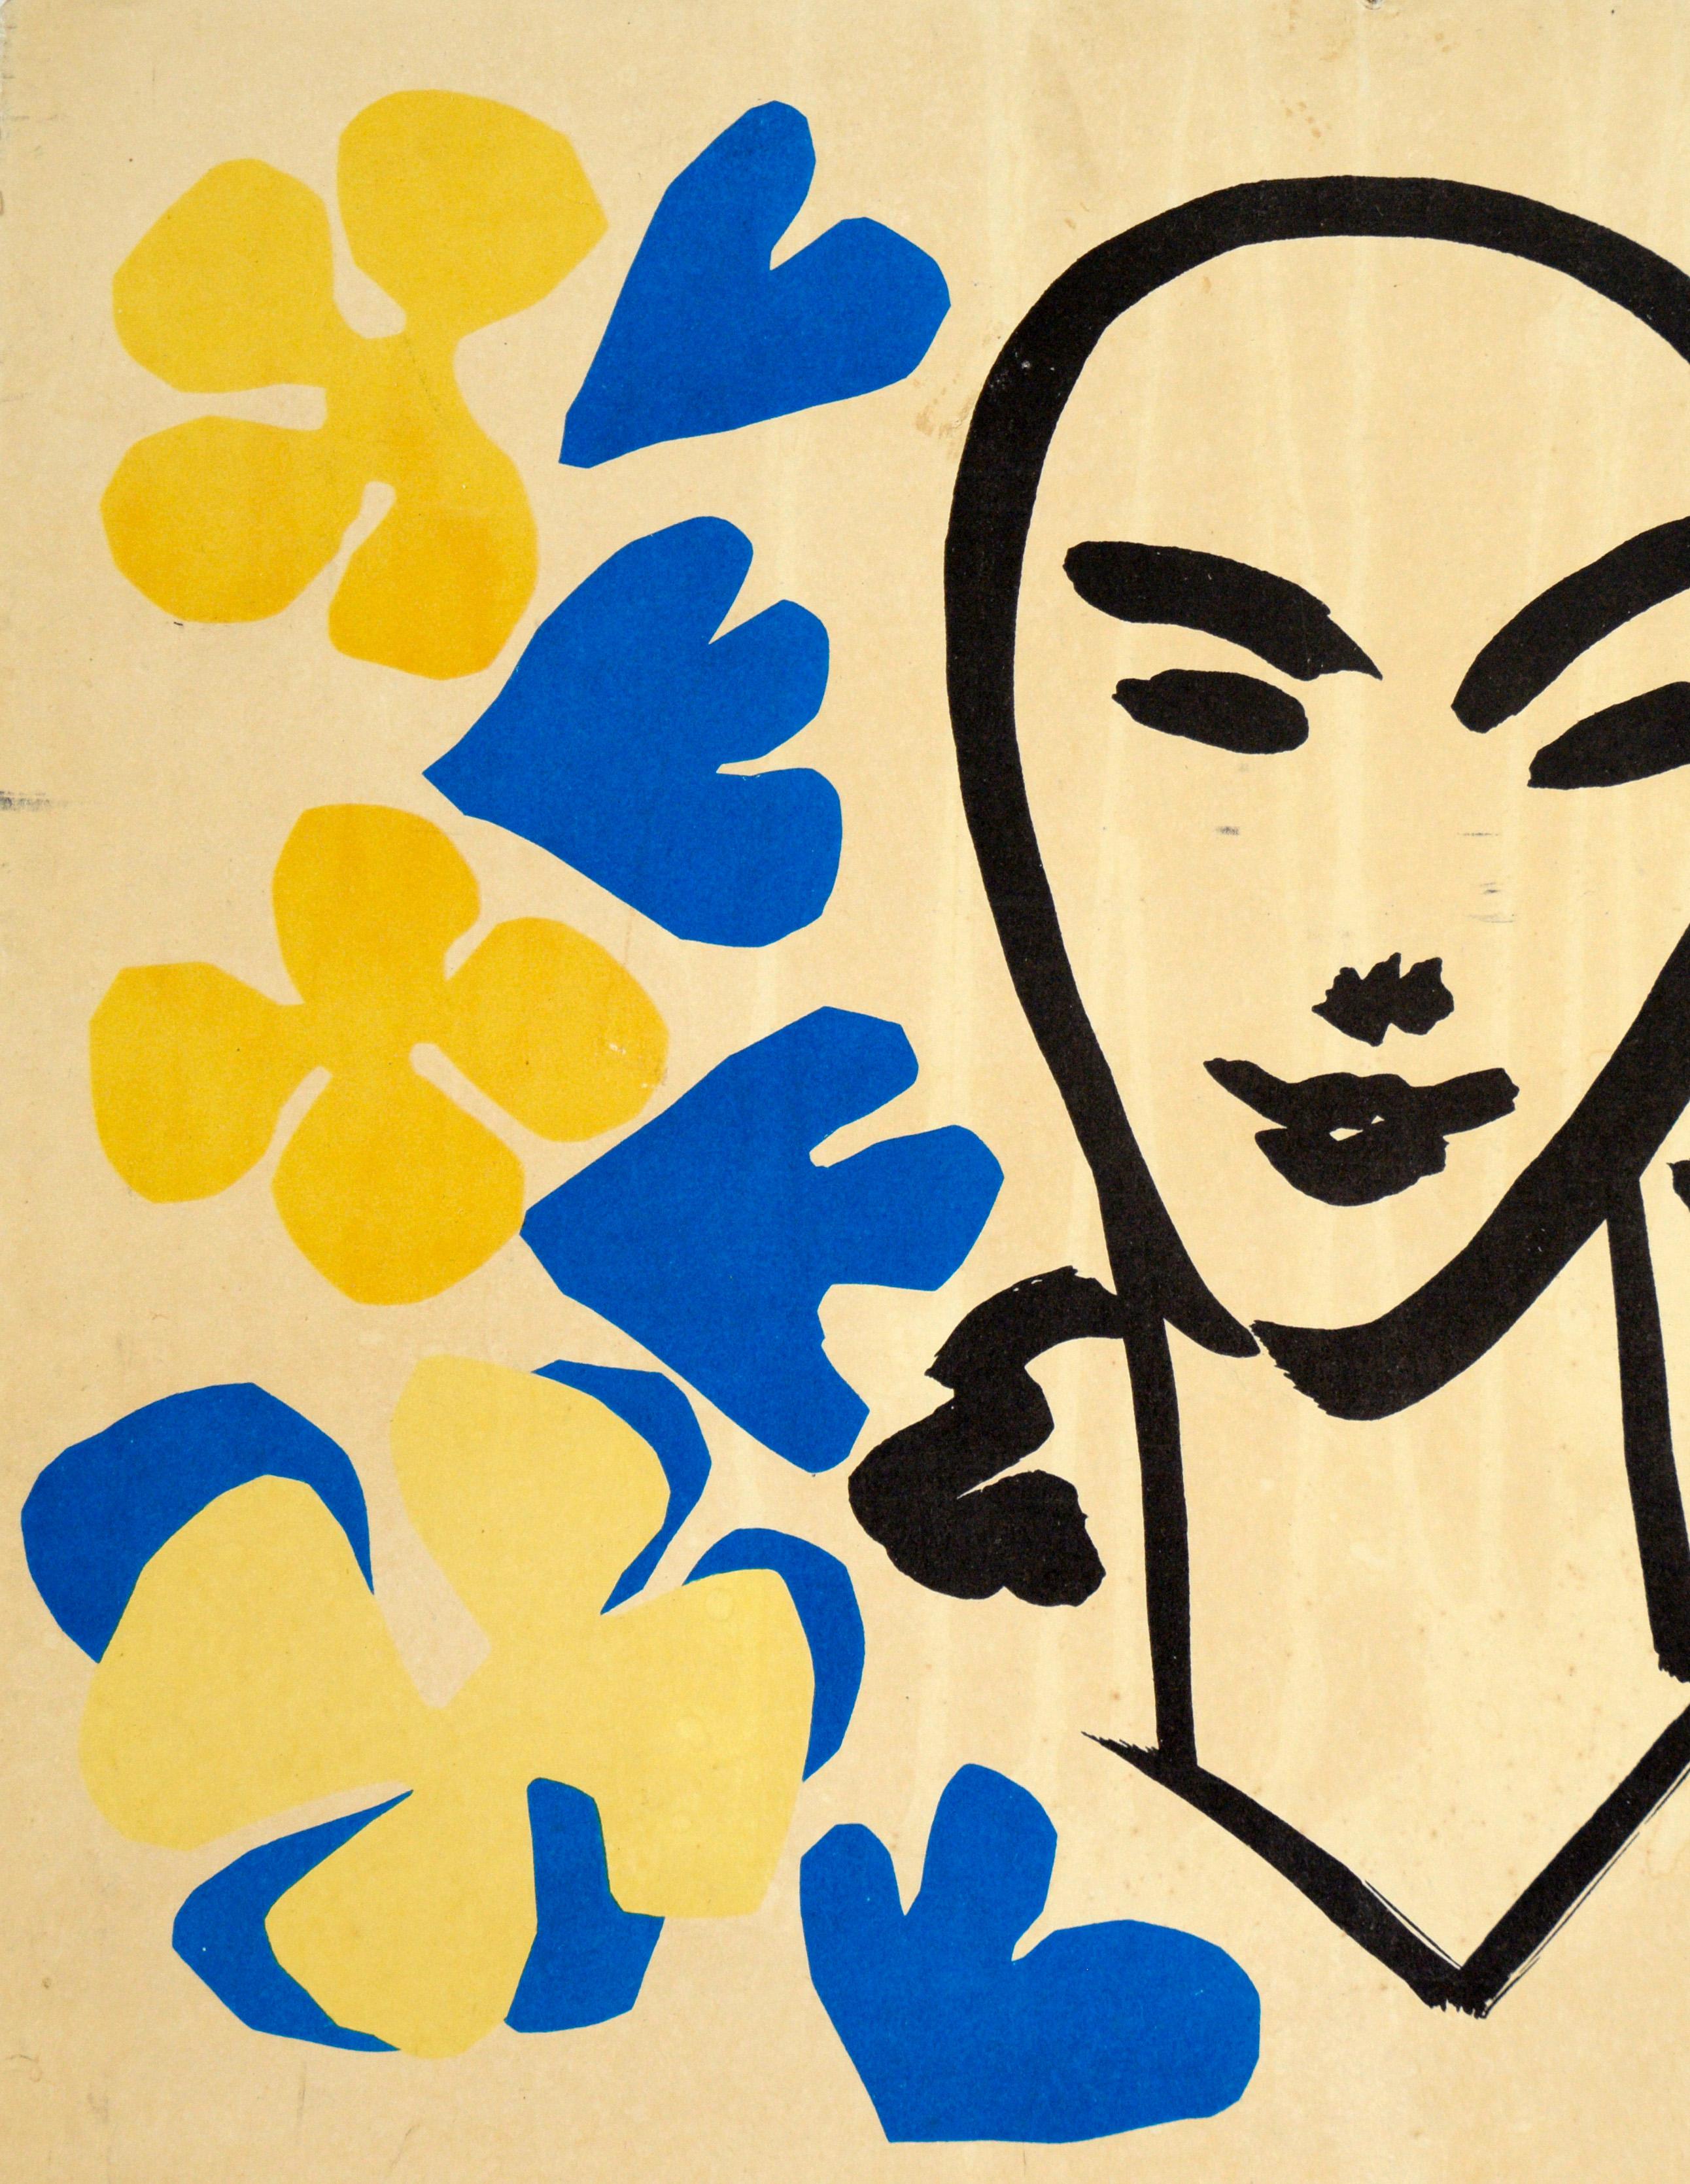 Original-Vintage-Ausstellungsplakat von Henri Matisse, The Tate Gallery, 1953 – Print von (after) Henri Matisse